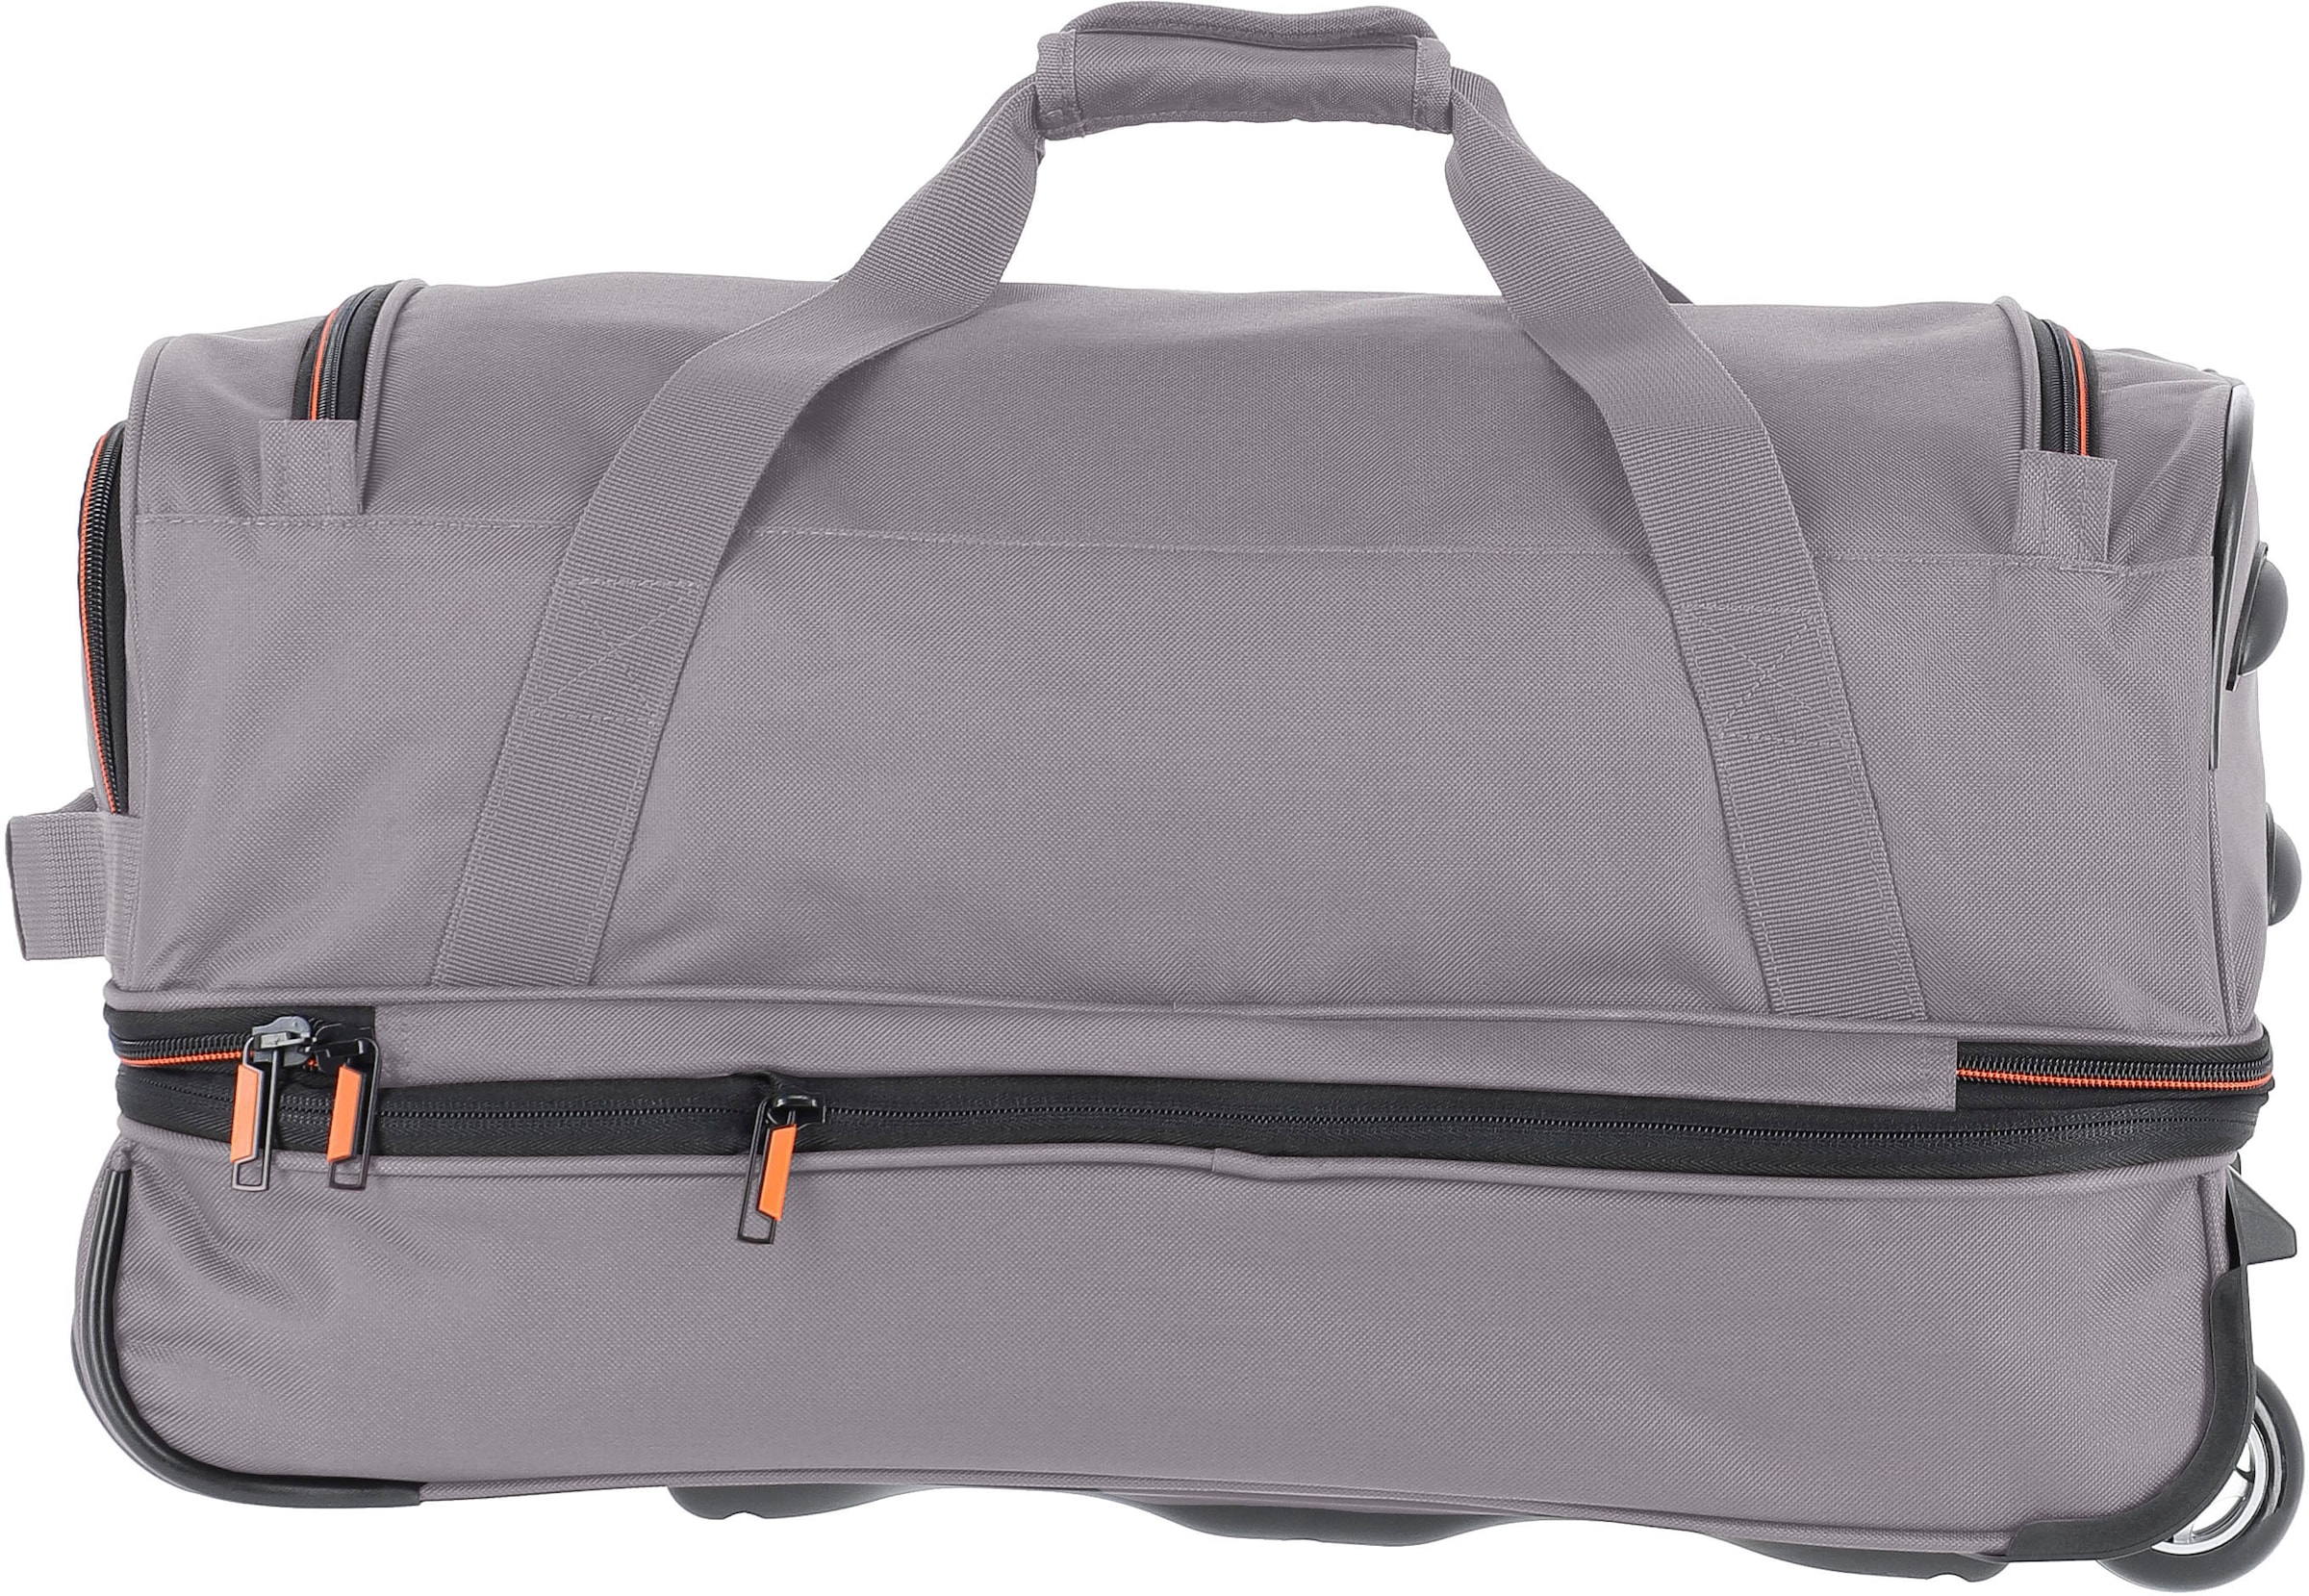 travelite Reisetasche »Basics, 55 cm, grau/orange«, Duffle Bag Sporttasche mit Trolleyfunktion und Volumenerweiterung